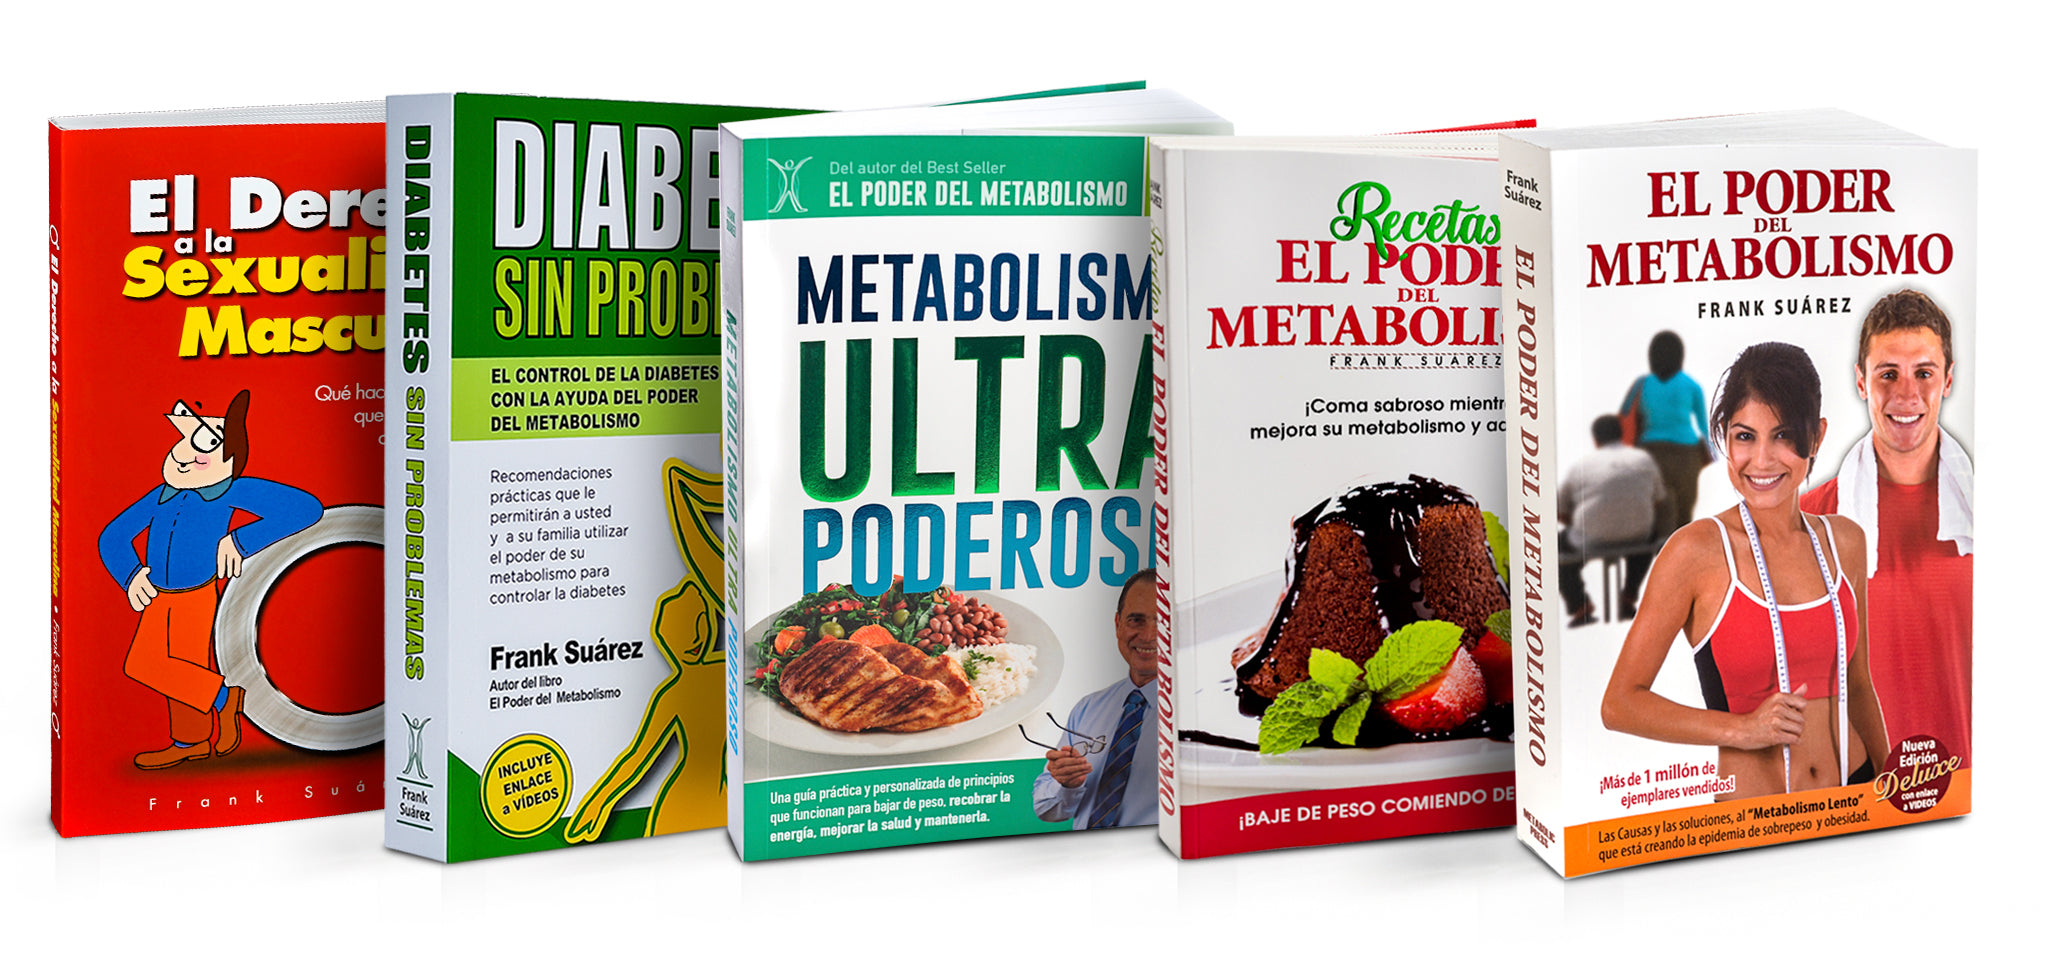 Libro Recetas El Poder Del Metabolismo - Frank Suarez